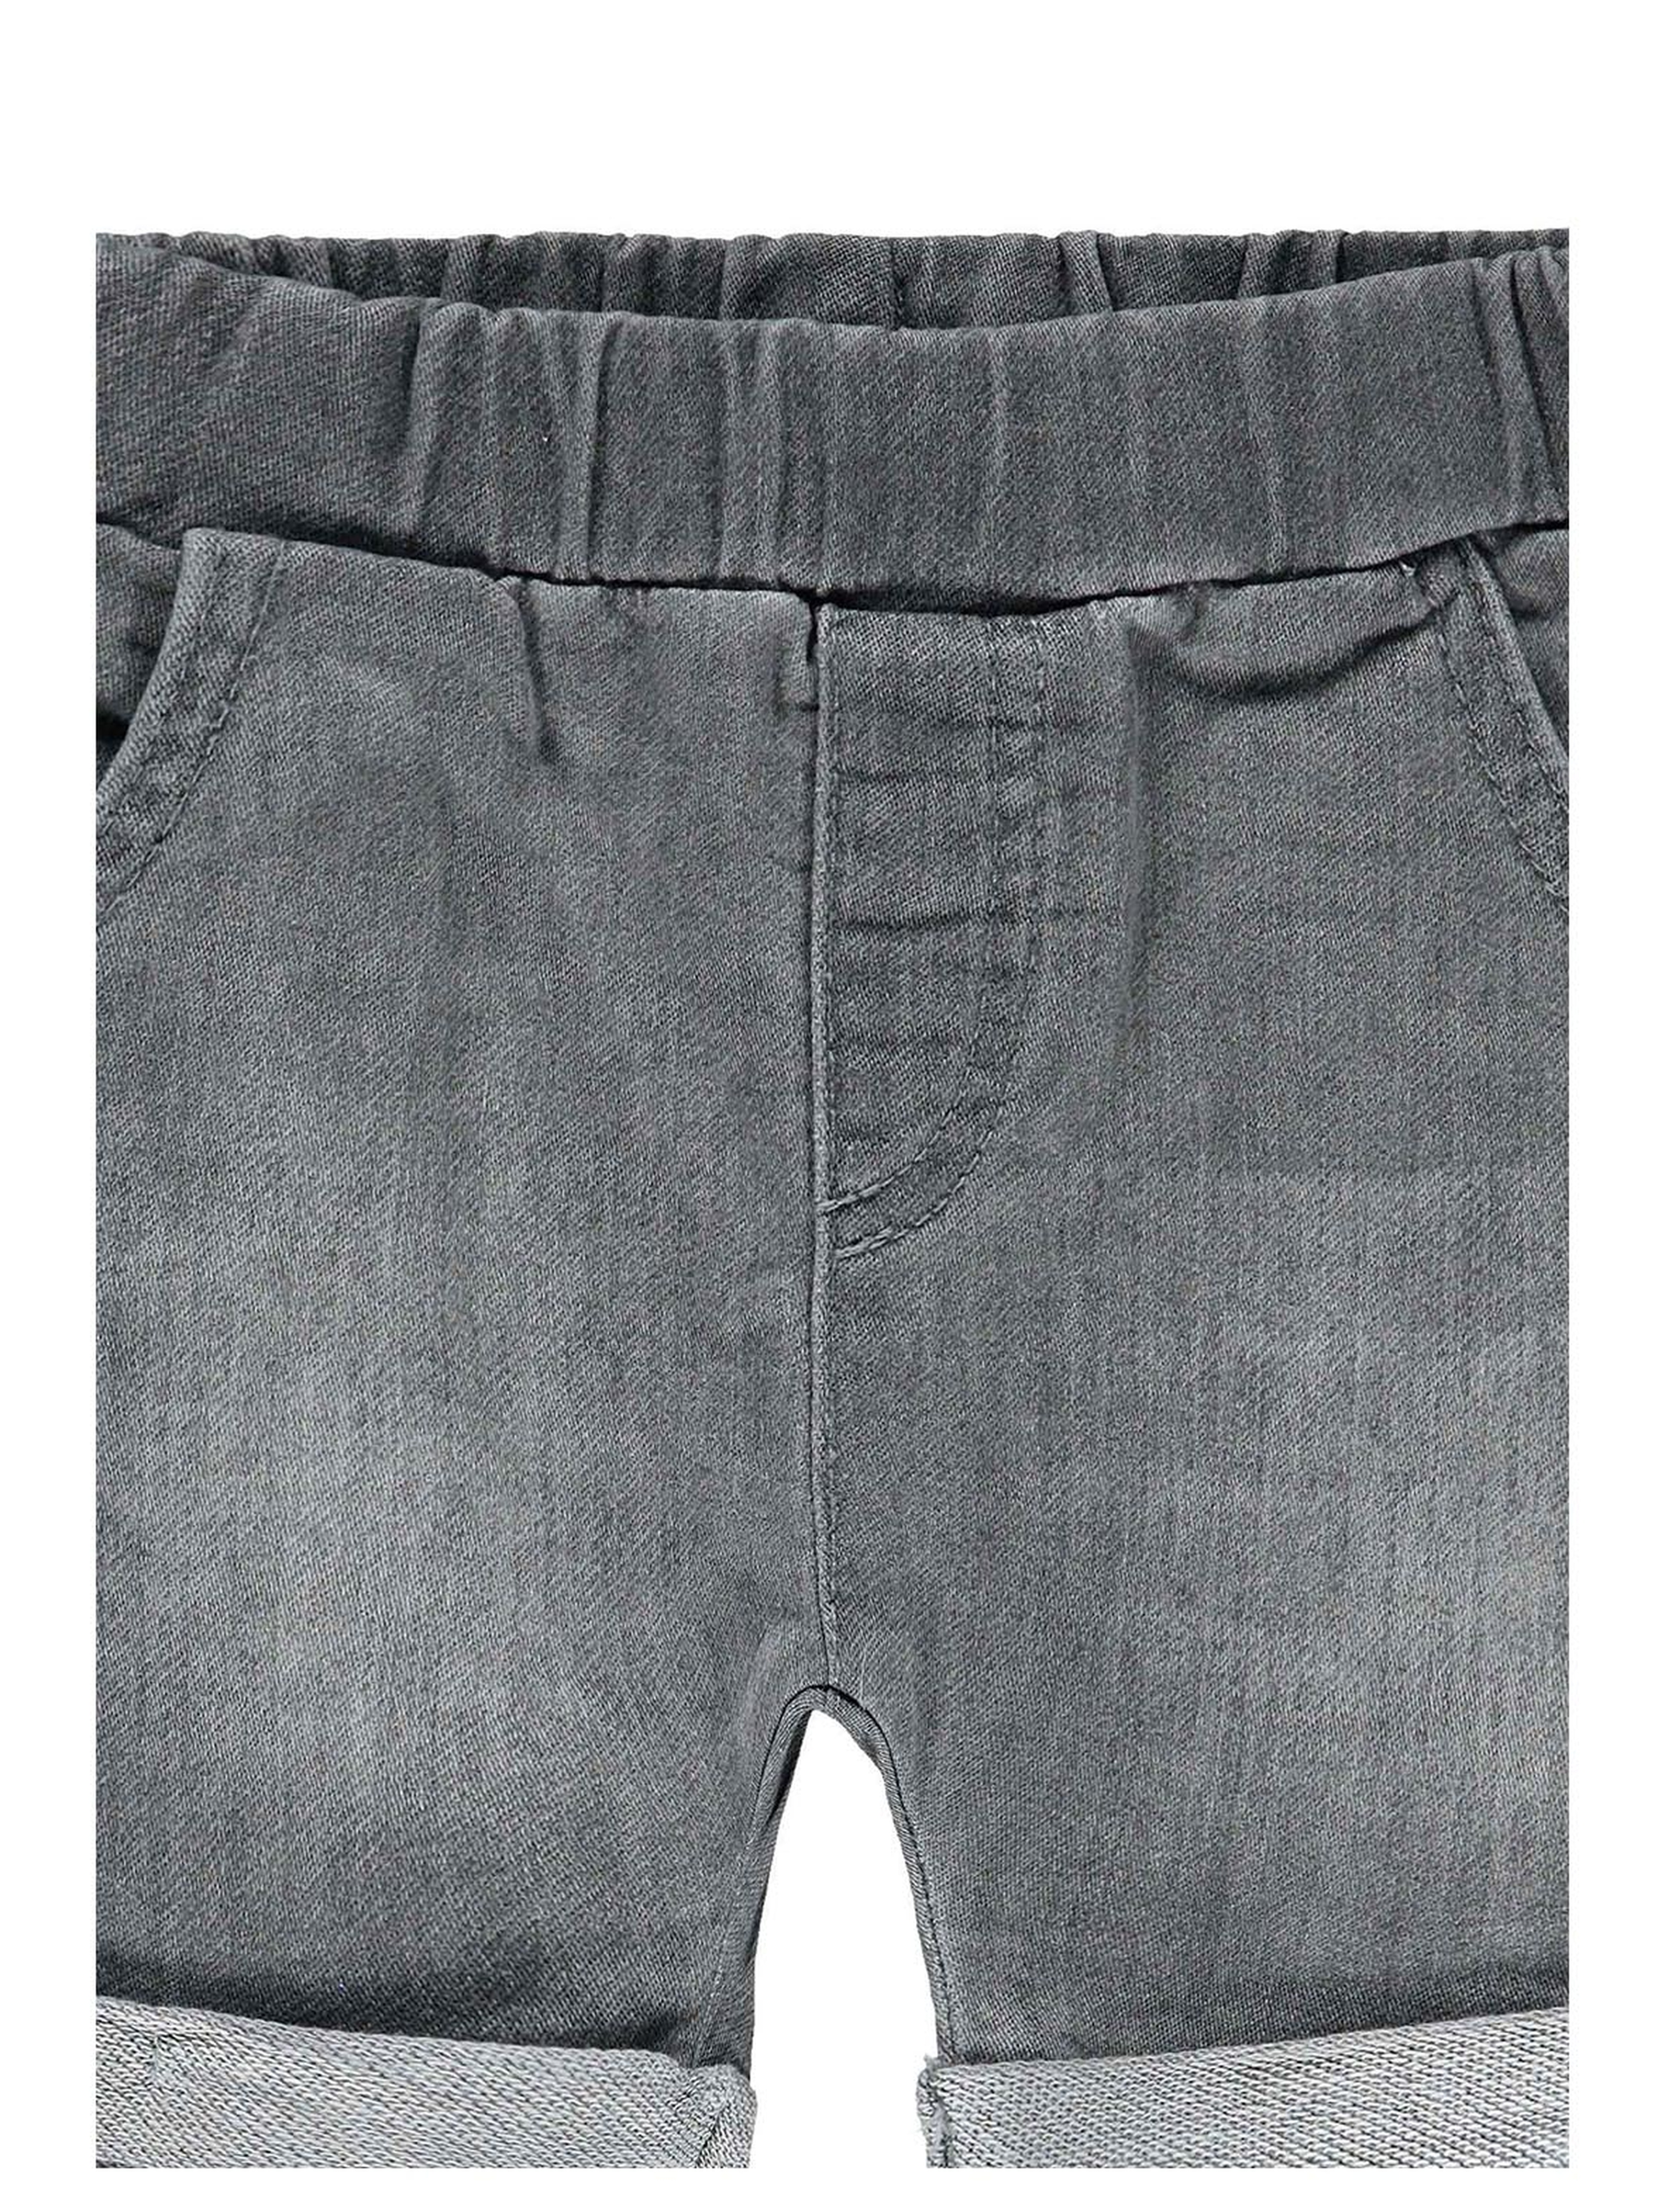 Spodenki krótkie jeansowe dziewczęce, szare, Bellybutton